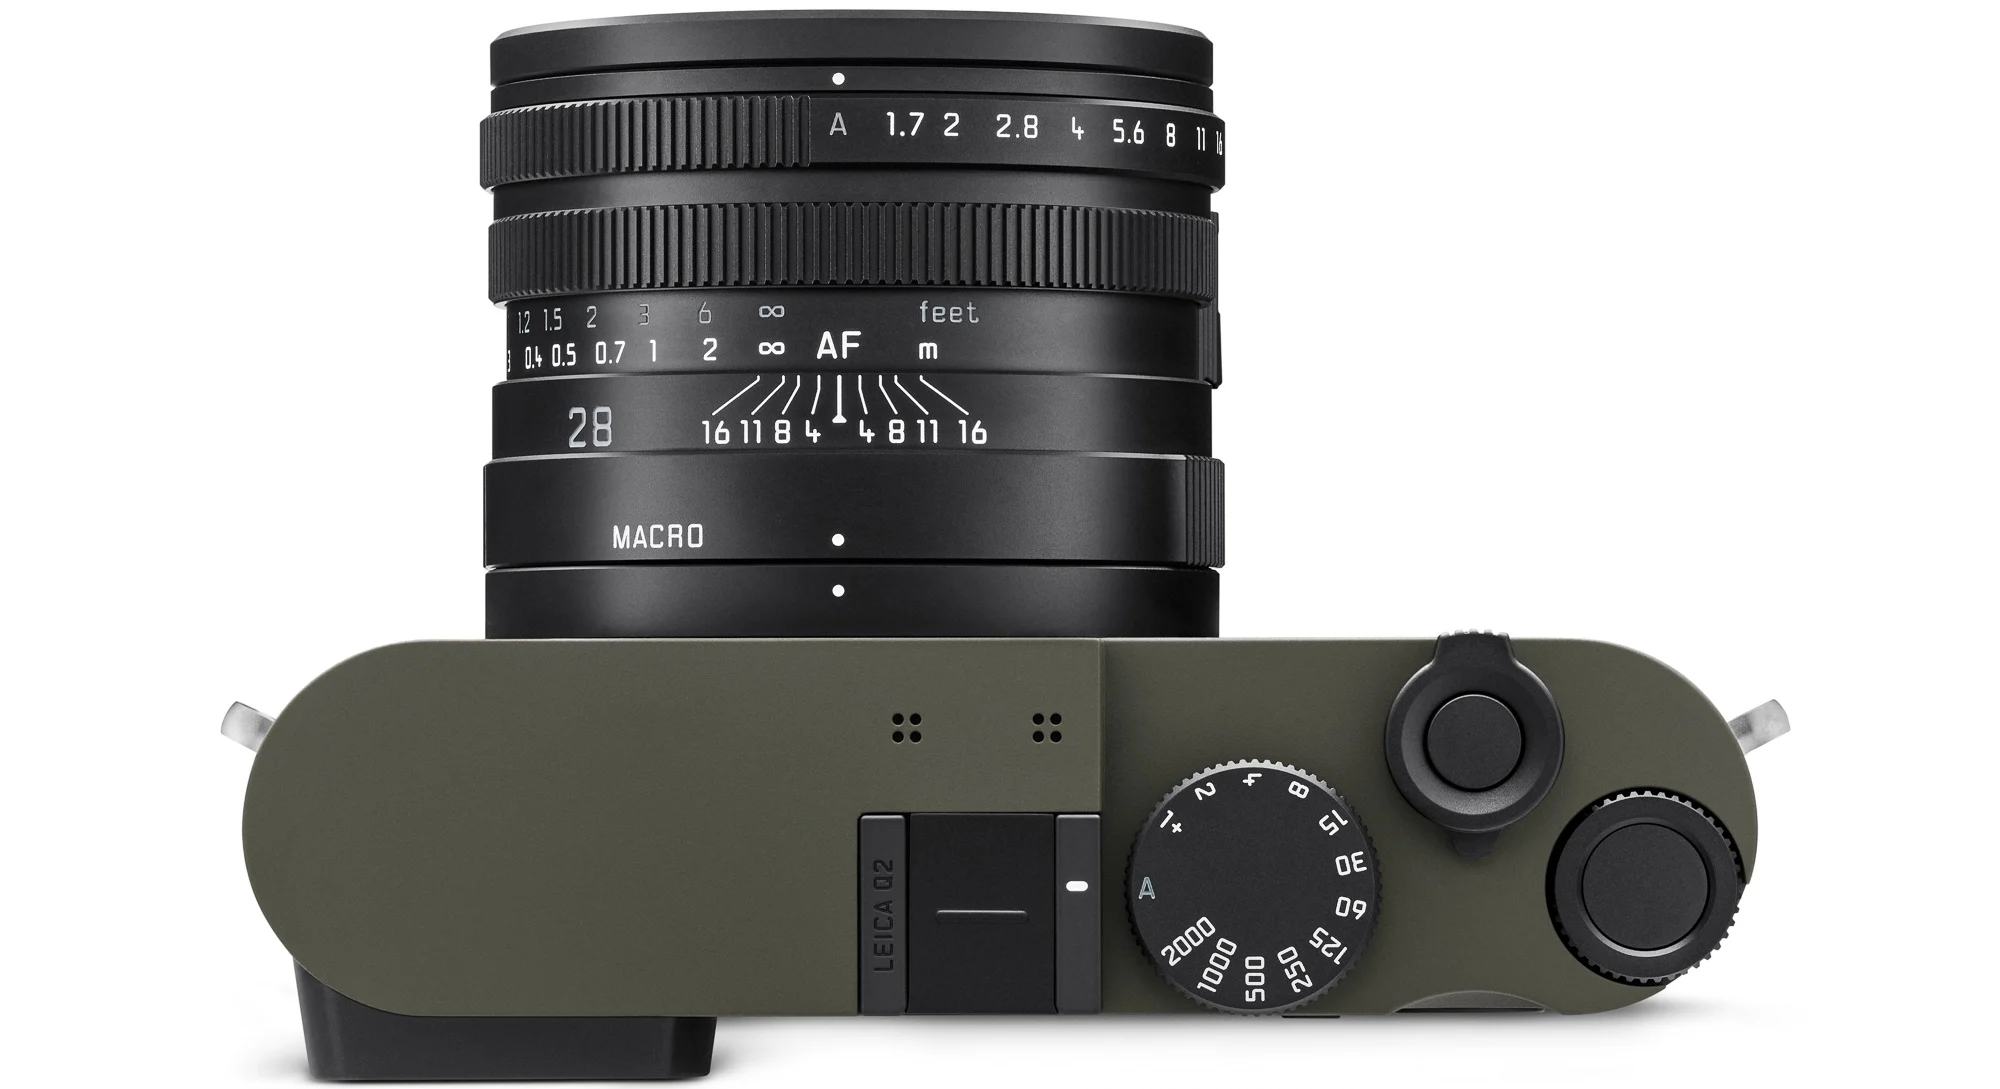 Leica ra mắt máy ảnh Q2 phiên bản đặc biệt Reporter với lớp vỏ Kevlar chống đạn